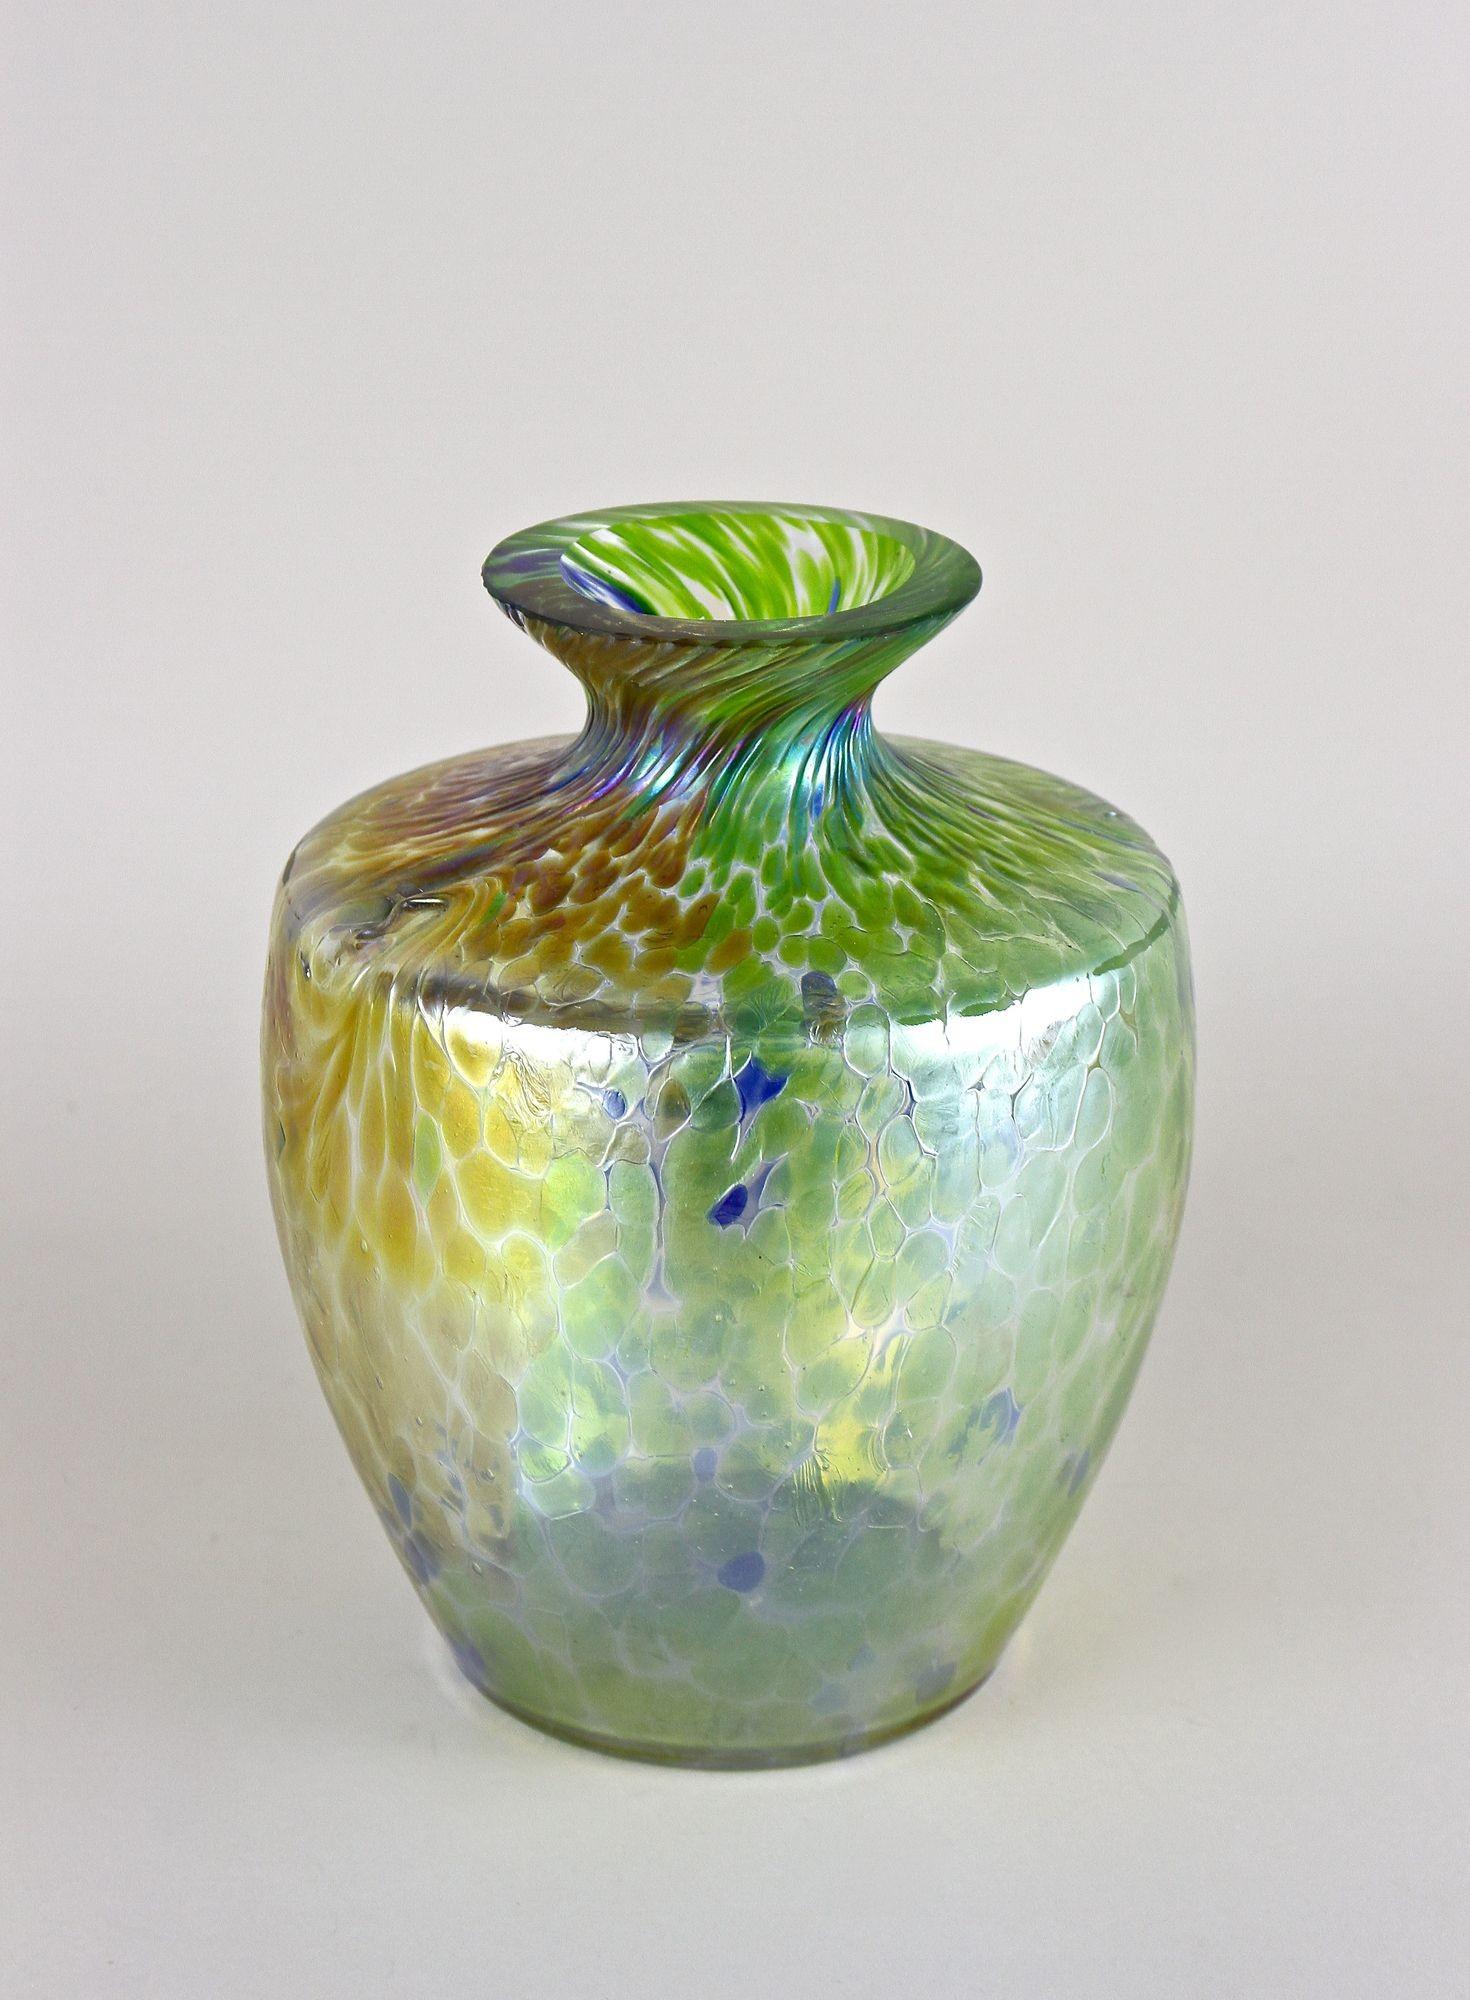 Magnifique grand vase en verre de Bohème irisé de la période Art Nouveau vers 1905. Ce vase en verre de forme bulbeuse, absolument extraordinaire, attribué à Fritz Heckert, impressionne par sa surface multicolore aux reflets verts, bleus, dorés et